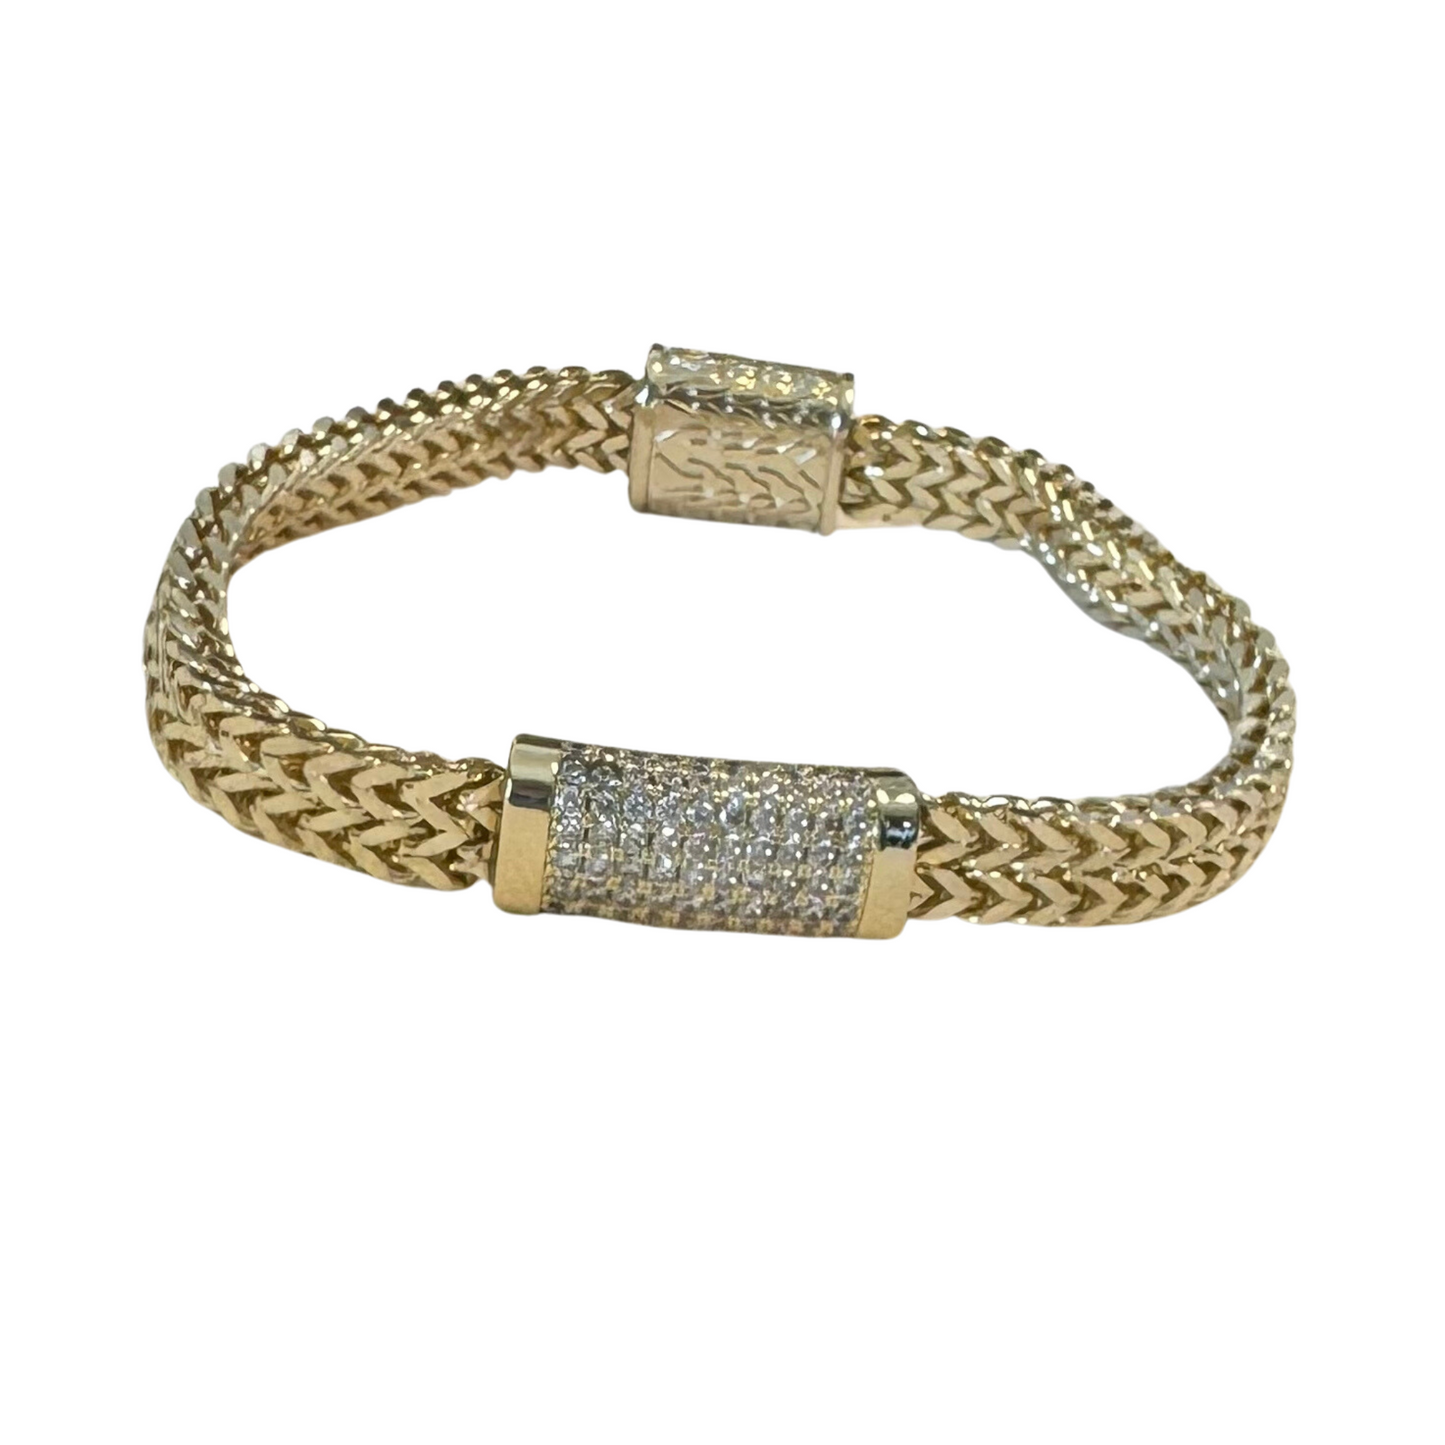 Snake chain bracelet in gold